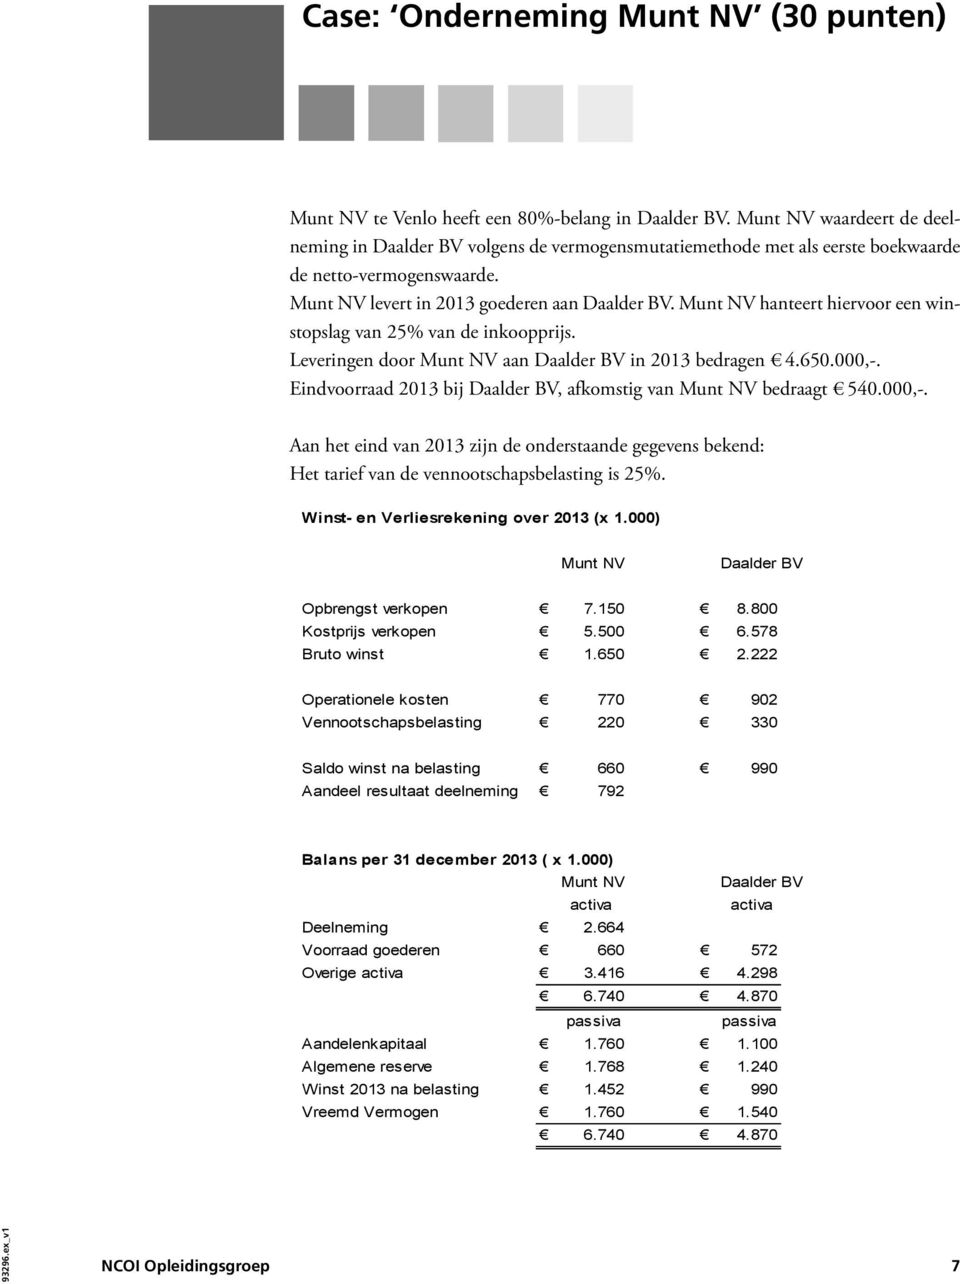 Munt NV hanteert hiervoor een winstopslag van 25% van de inkoopprijs. Leveringen door Munt NV aan Daalder BV in 2013 bedragen 4.650.000,-.